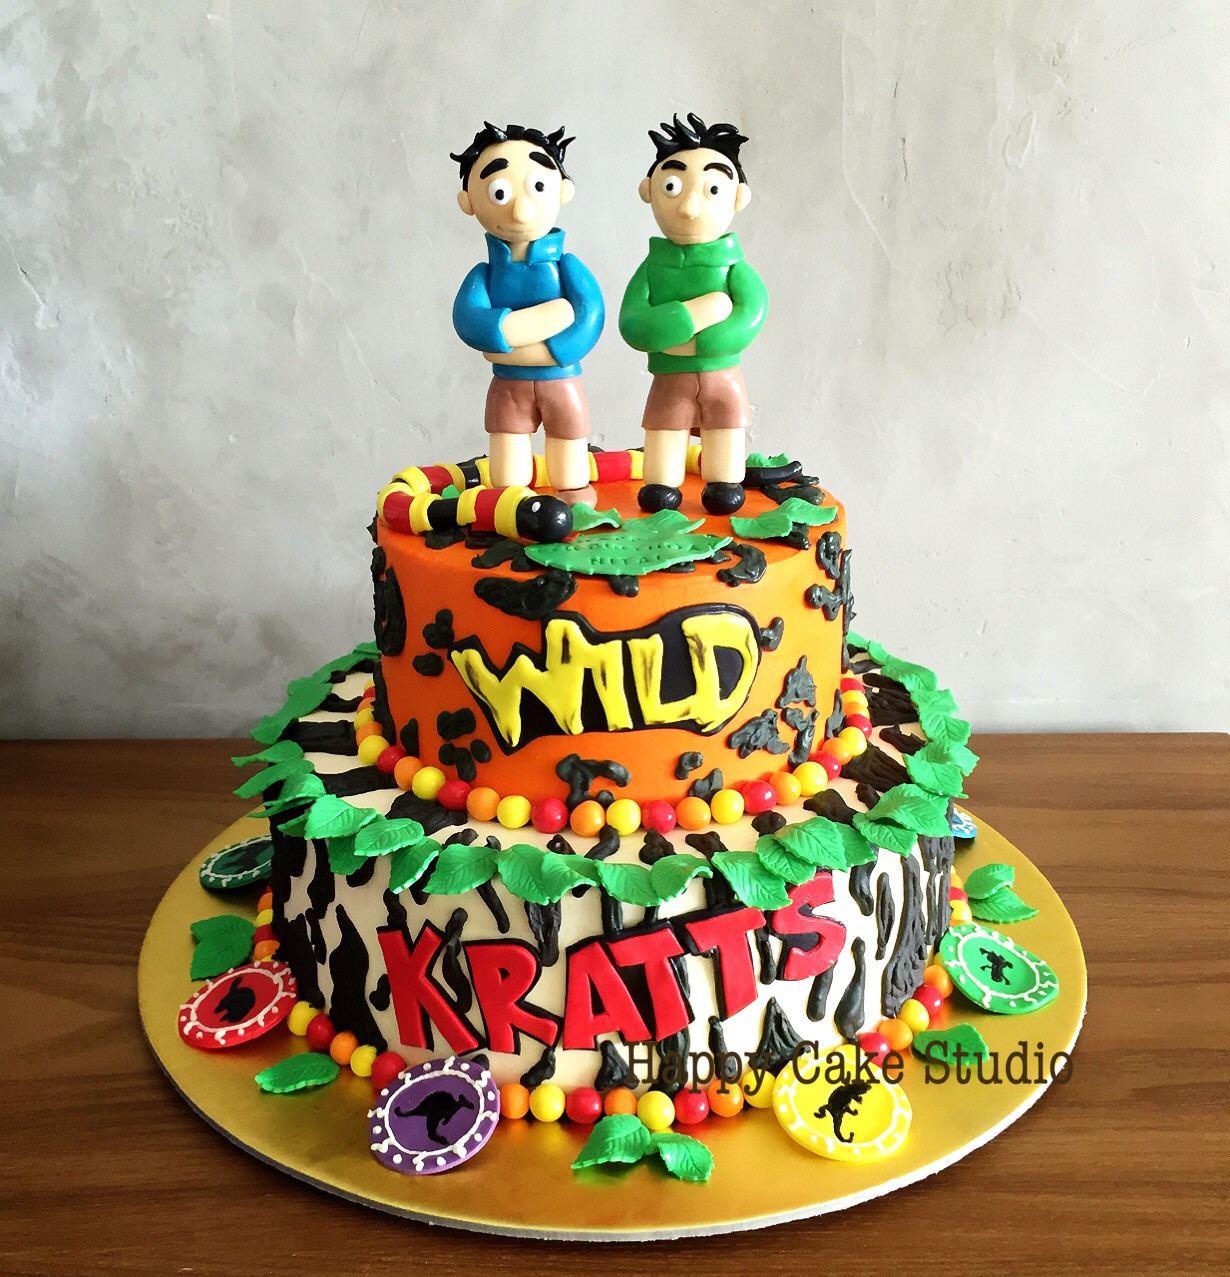 Wild Kratts Birthday Cake
 Wild Kratts Cake for Nitai’s 4th Birthday